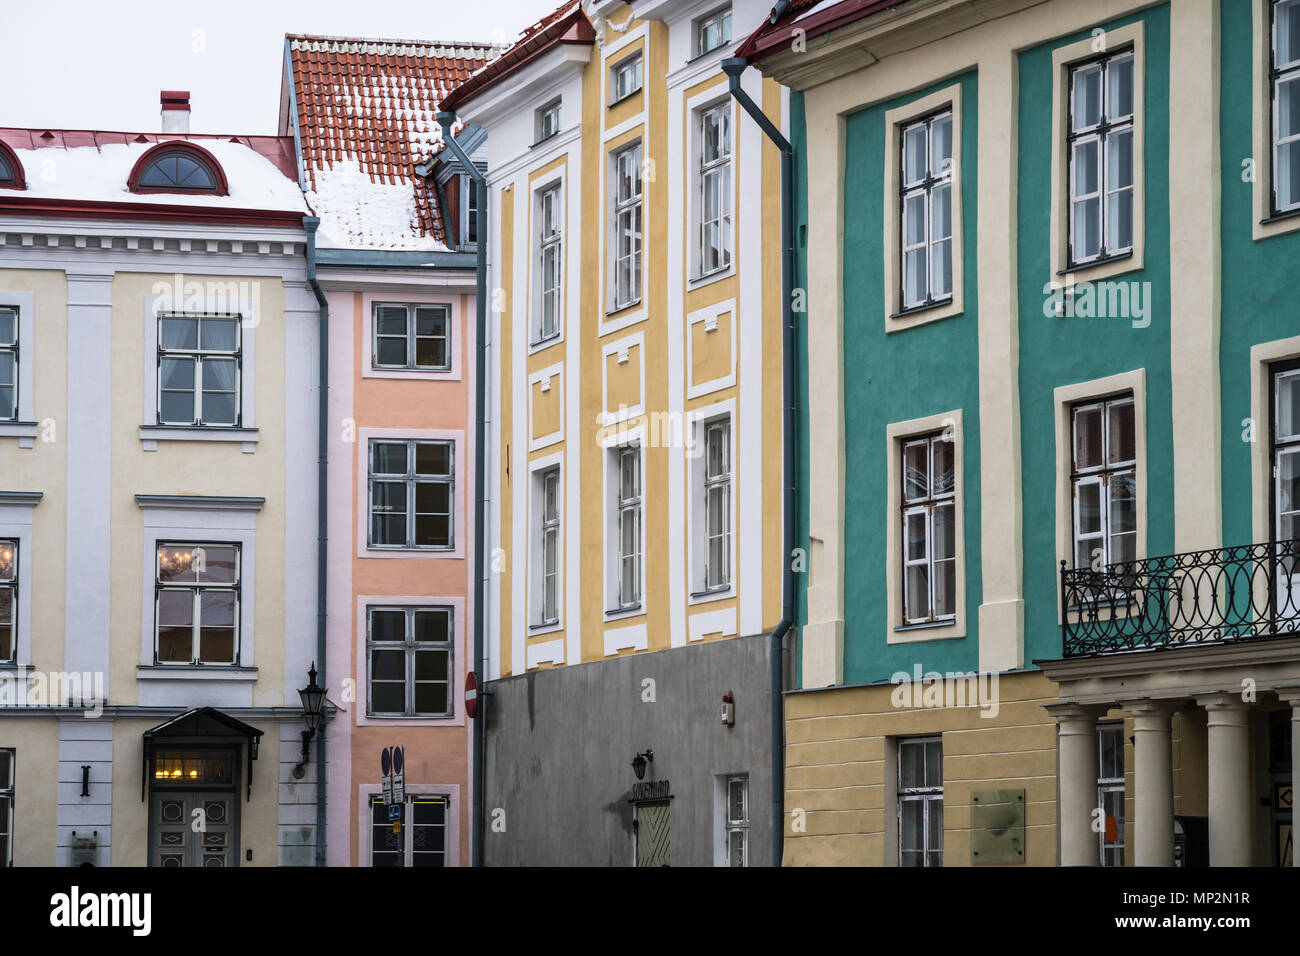 Colorul bâtiment dans la vieille ville de Tallinn, Estonie capitale dans la région de la mer Baltique du nord-est de l'Europe Banque D'Images